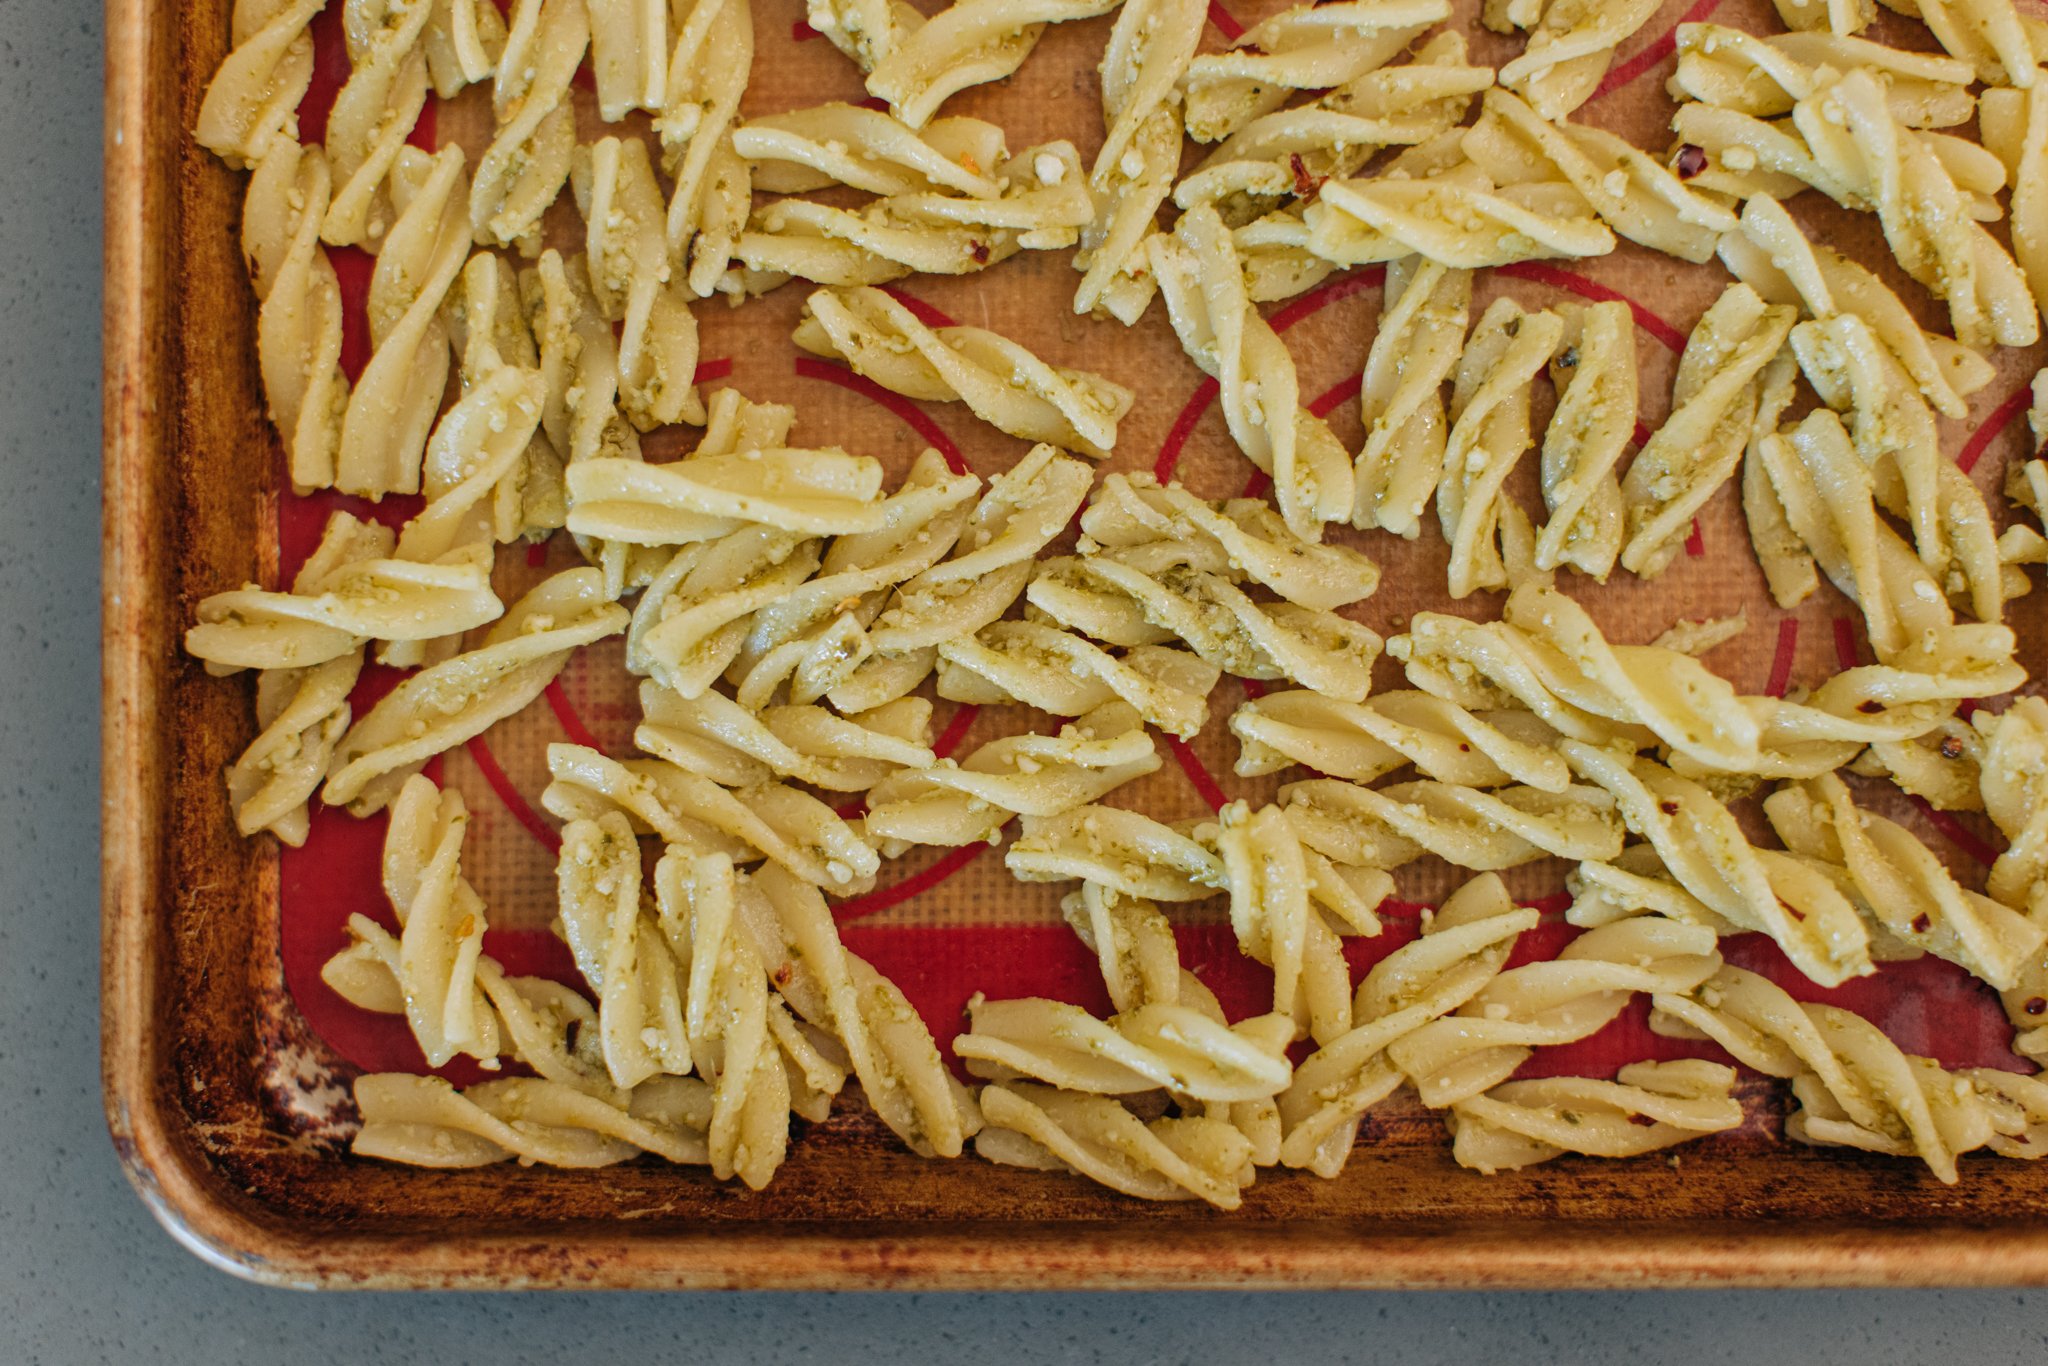 tiktok-viral-pasta-chips-recipe-5.jpg